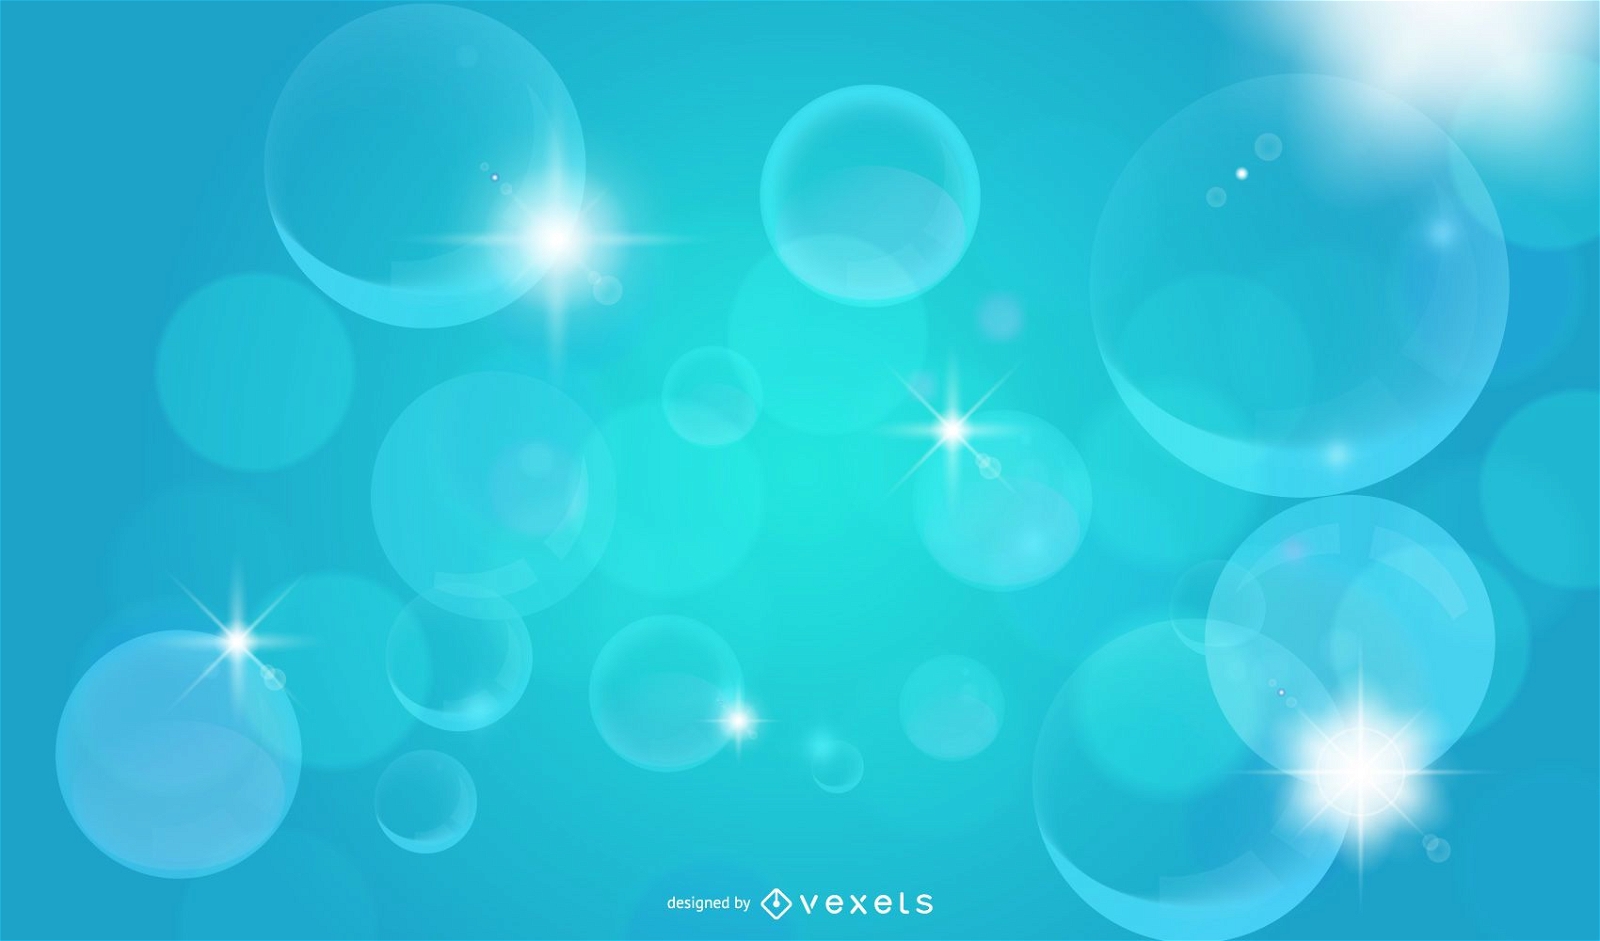 Crystallized Shiny Bubbles Background